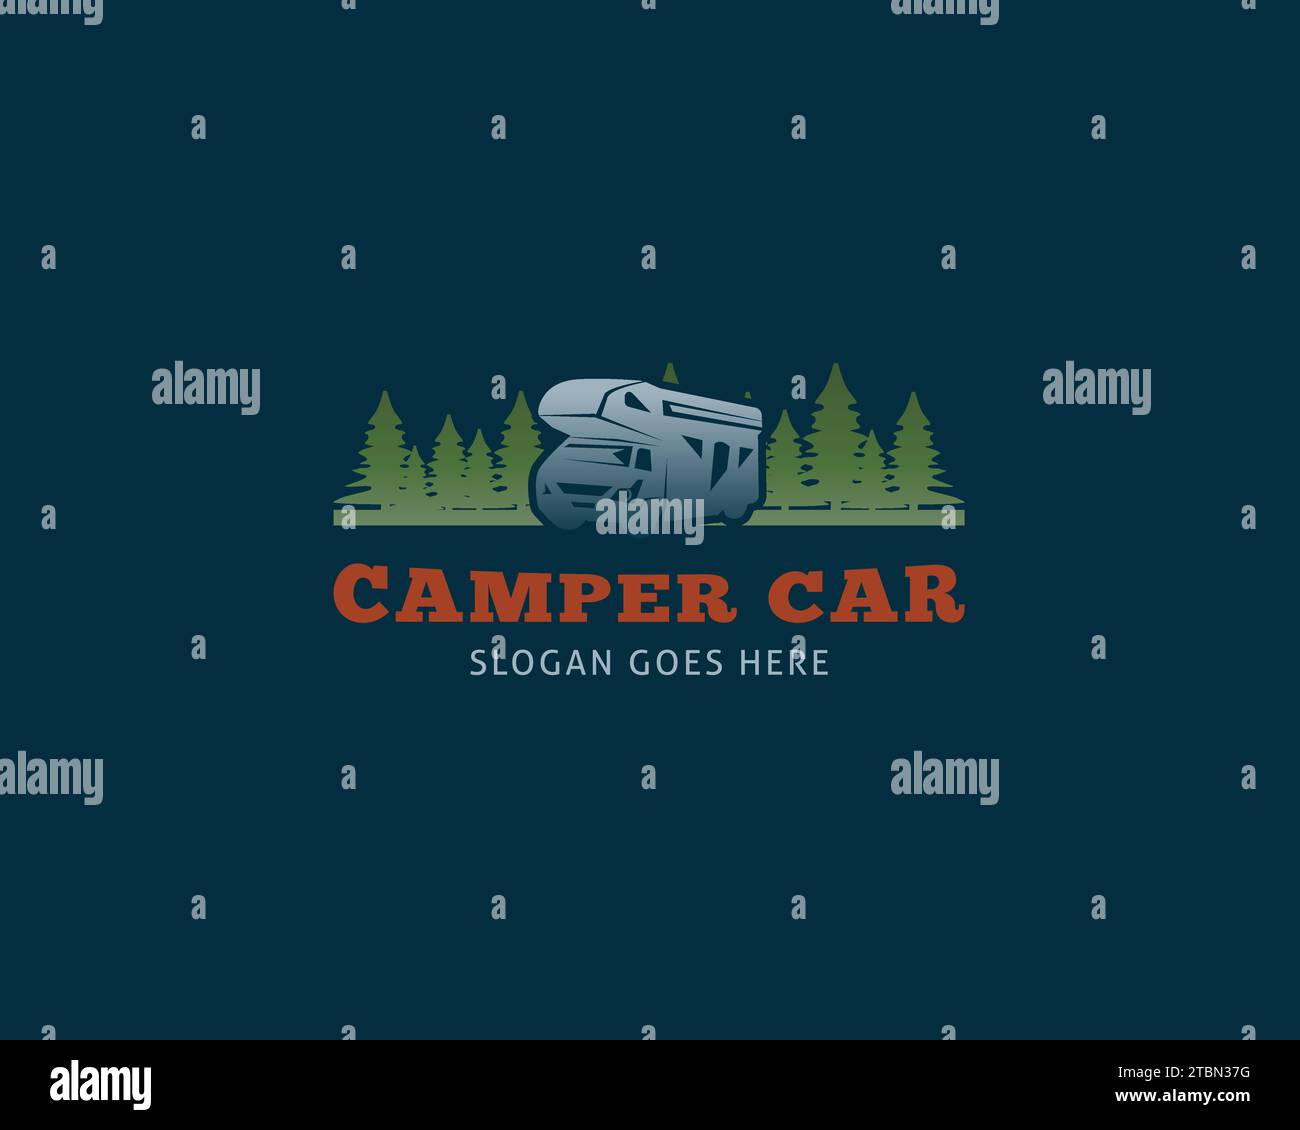 Design-Vorlage für das Logo von Adventure RV Camper Car Stock Vektor